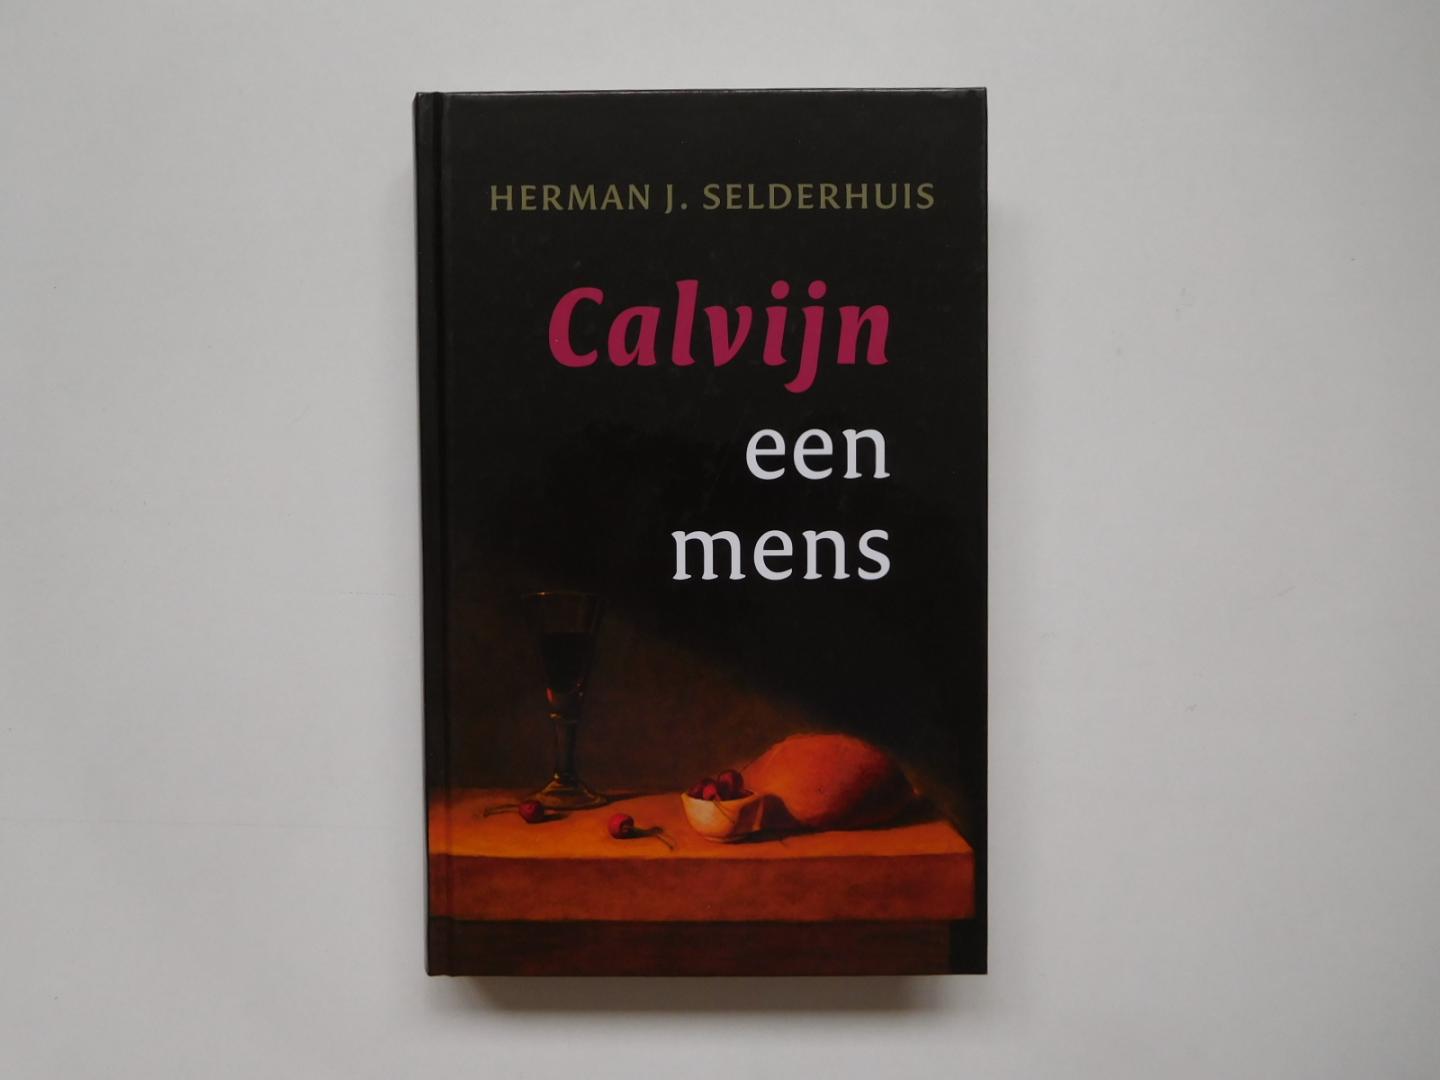 Herman J. Selderhuis - Calvijn een mens (biografie)